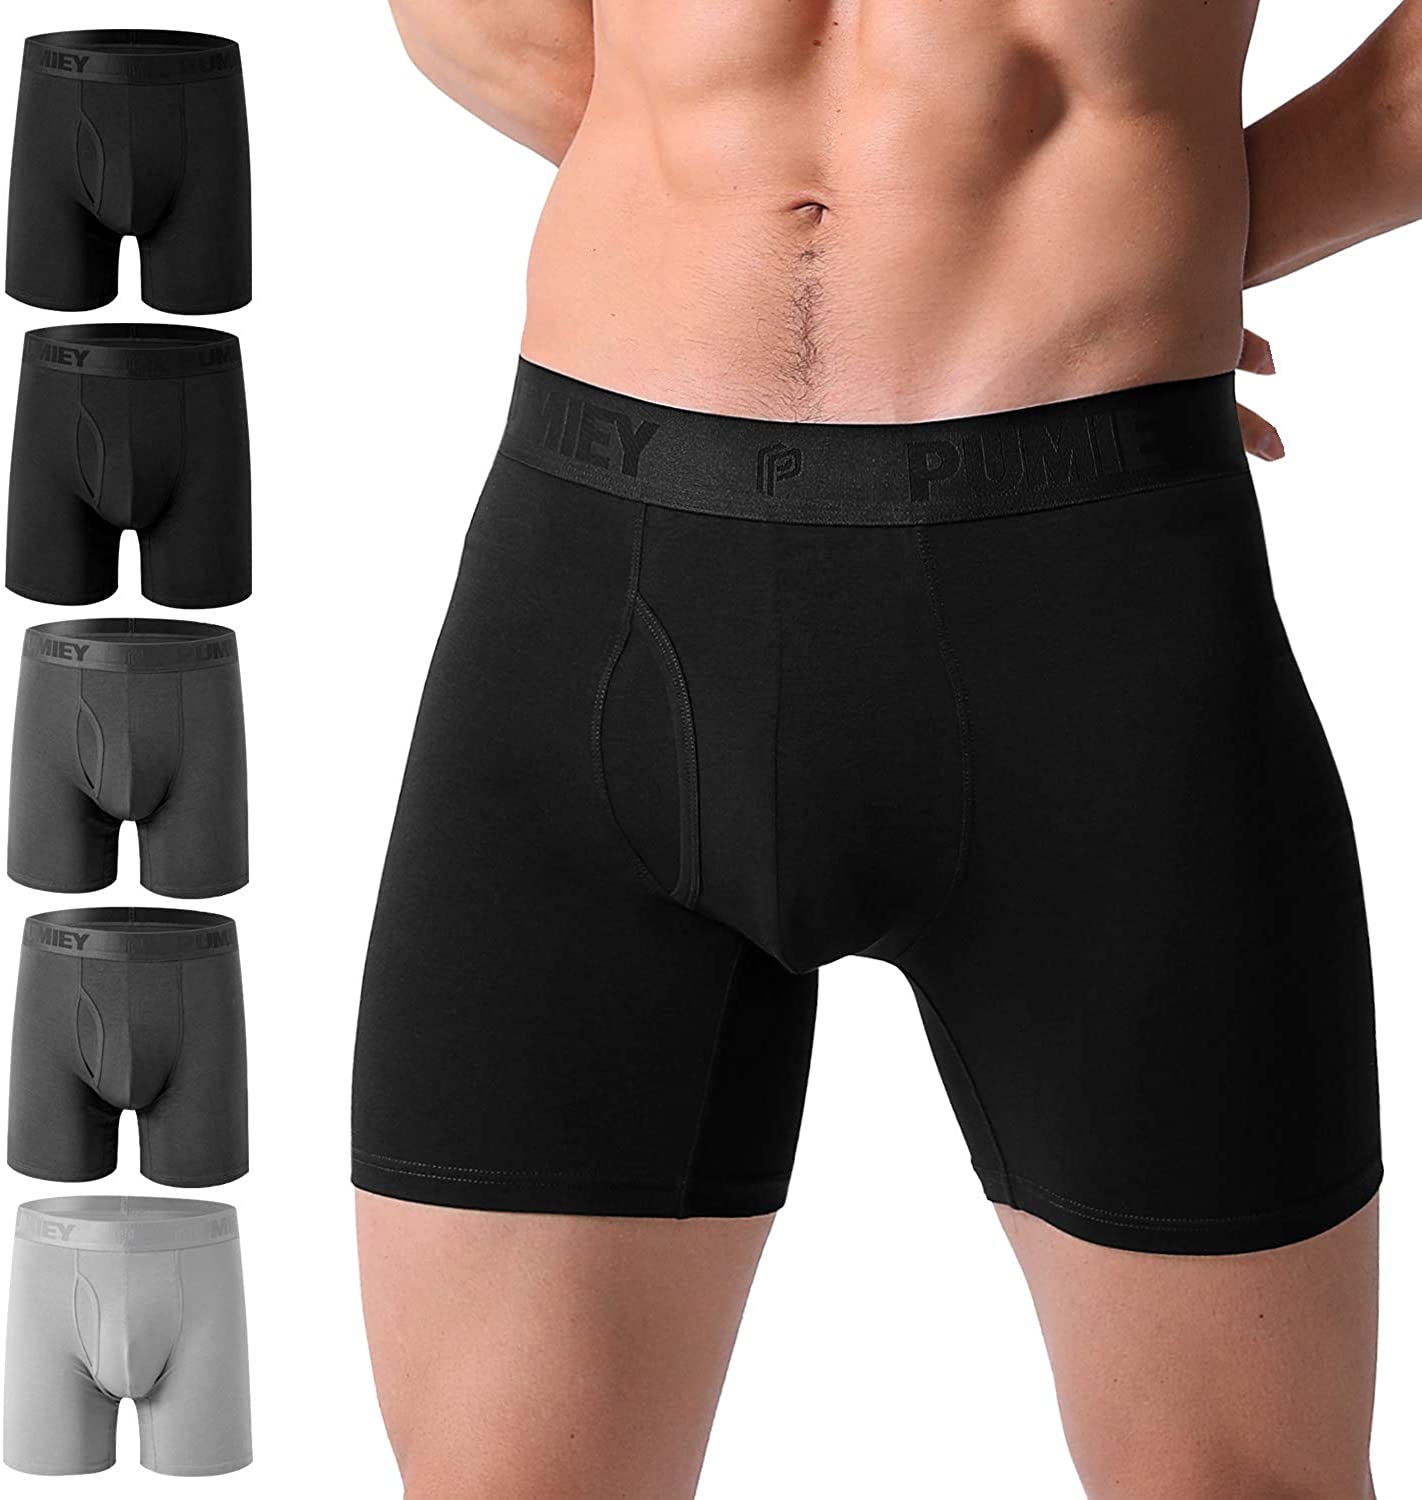 Men Breathable Soft Cotton Underwear Boxer Briefs Bulge Pouch Shorts Underpants